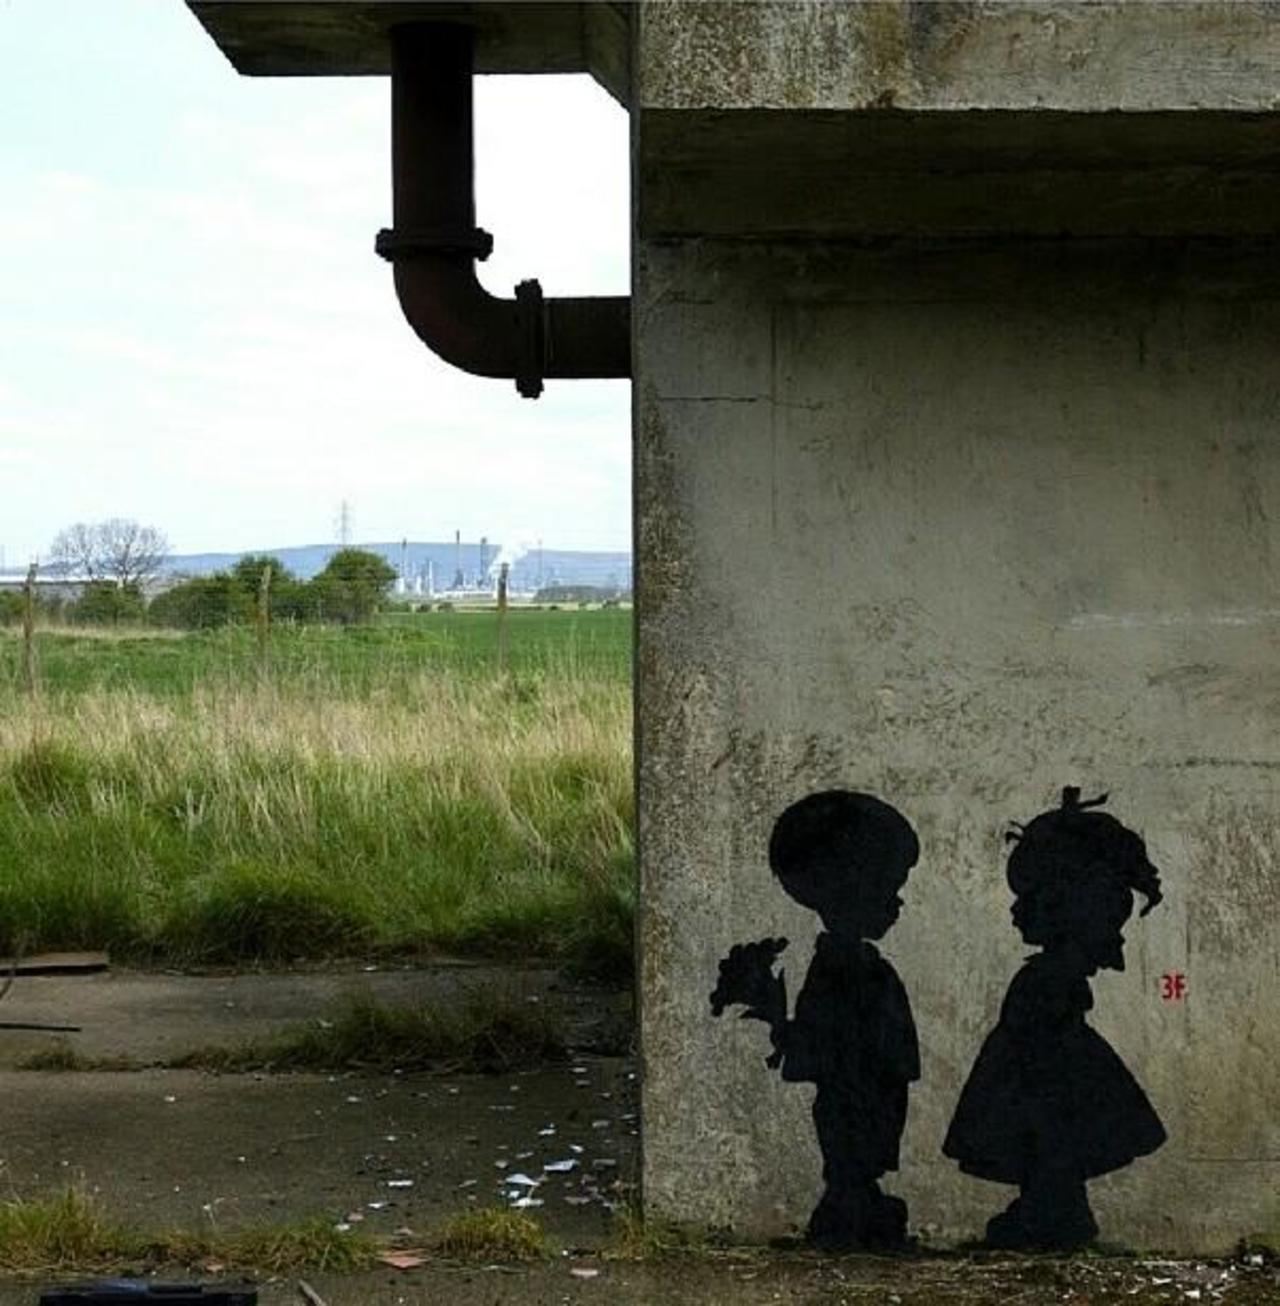 Found love in a hopeless place!

Street Art by 3fountains 

#art #mural #graffiti #streetart http://t.co/de88E3sCKr